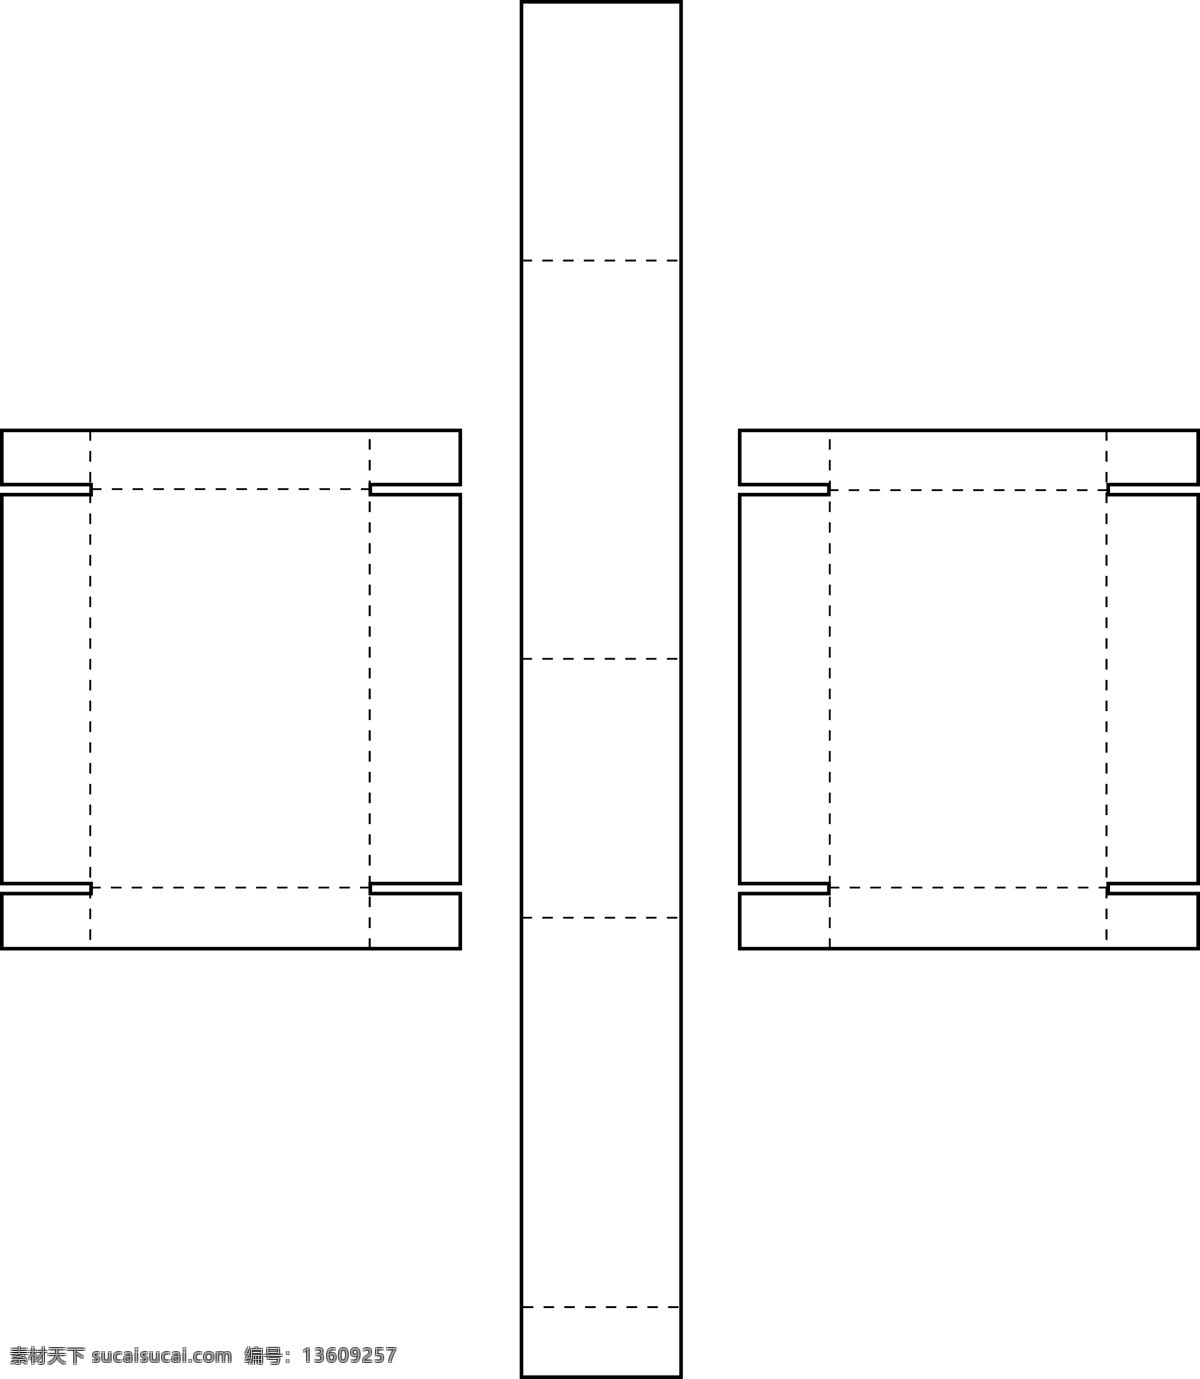 扣 合 型 长方体 包装盒 结构图 结构 扣合型 psd源文件 包装设计